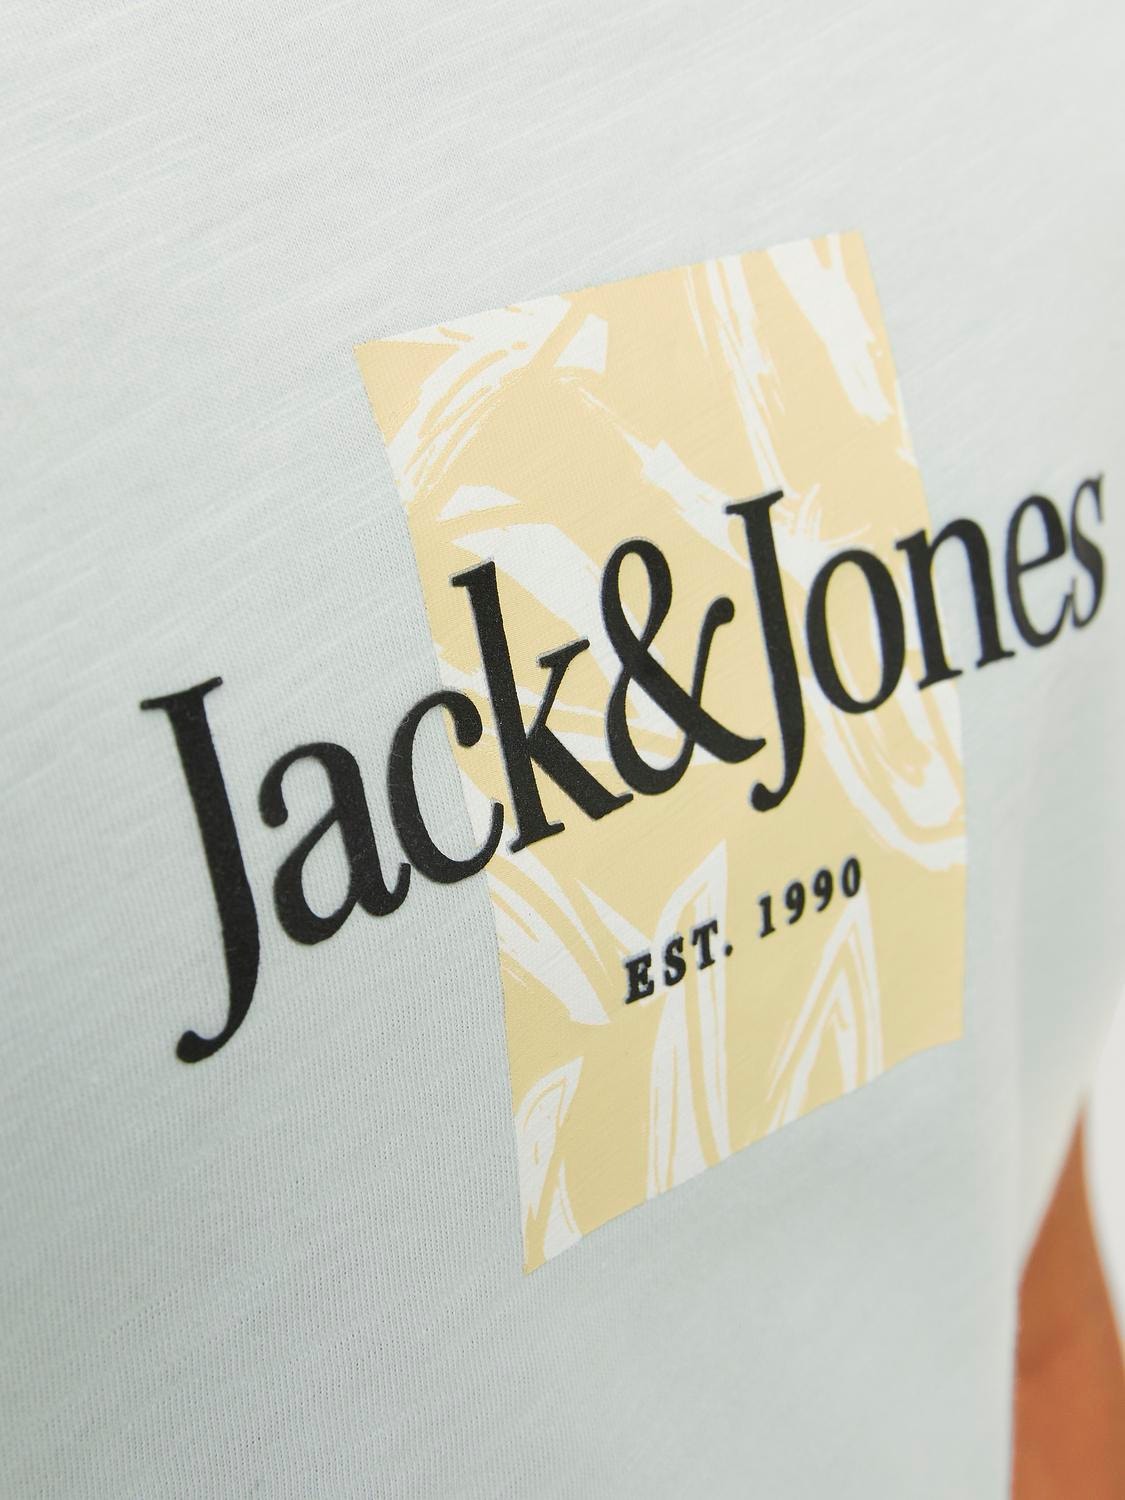 Jack & Jones Bedrukt T-shirt Voor jongens -Skylight - 12253973